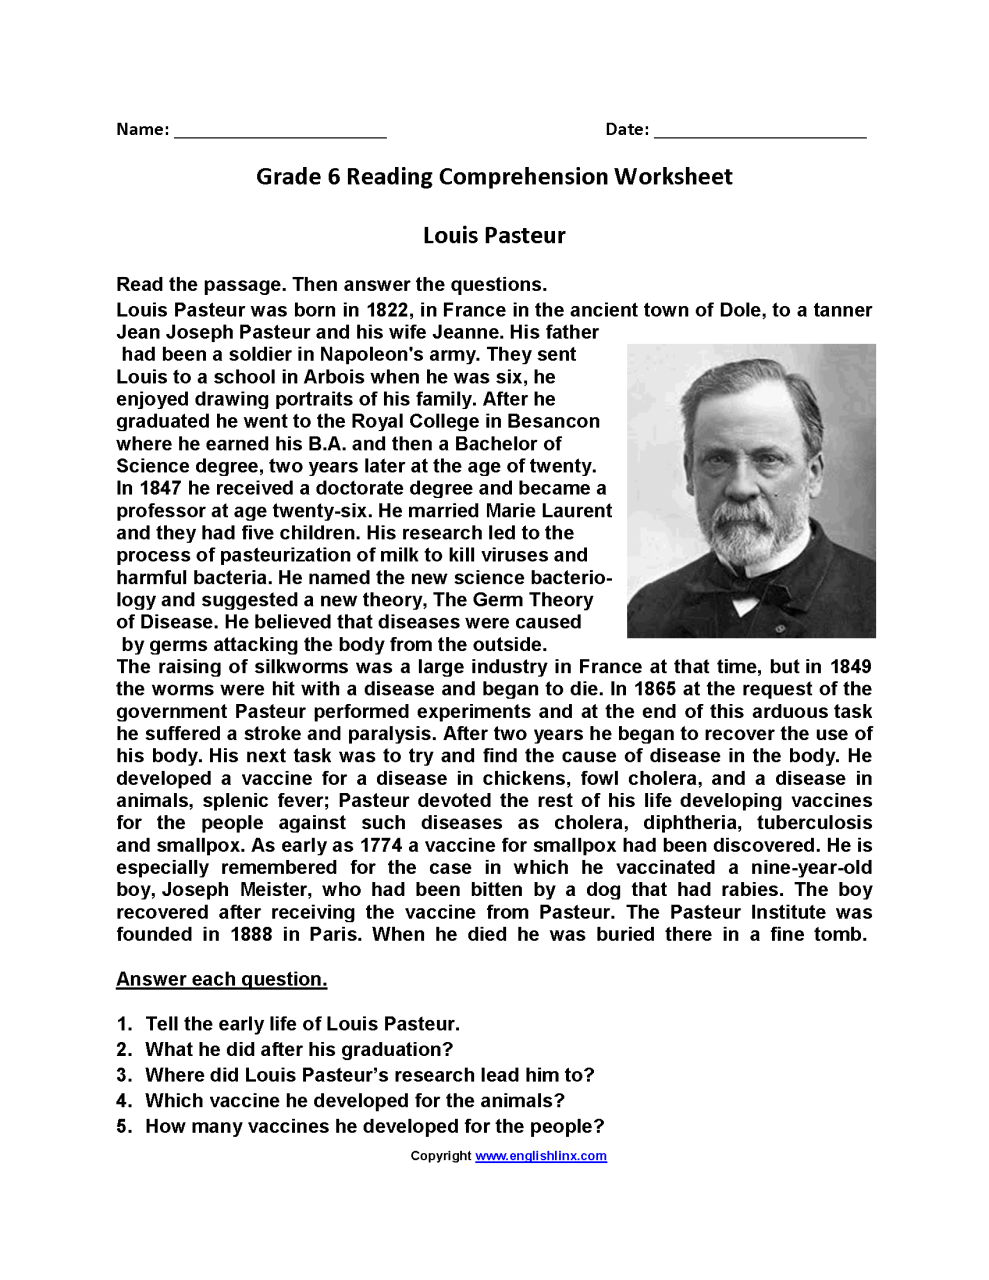 Free Comprehension Worksheets For Grade 6